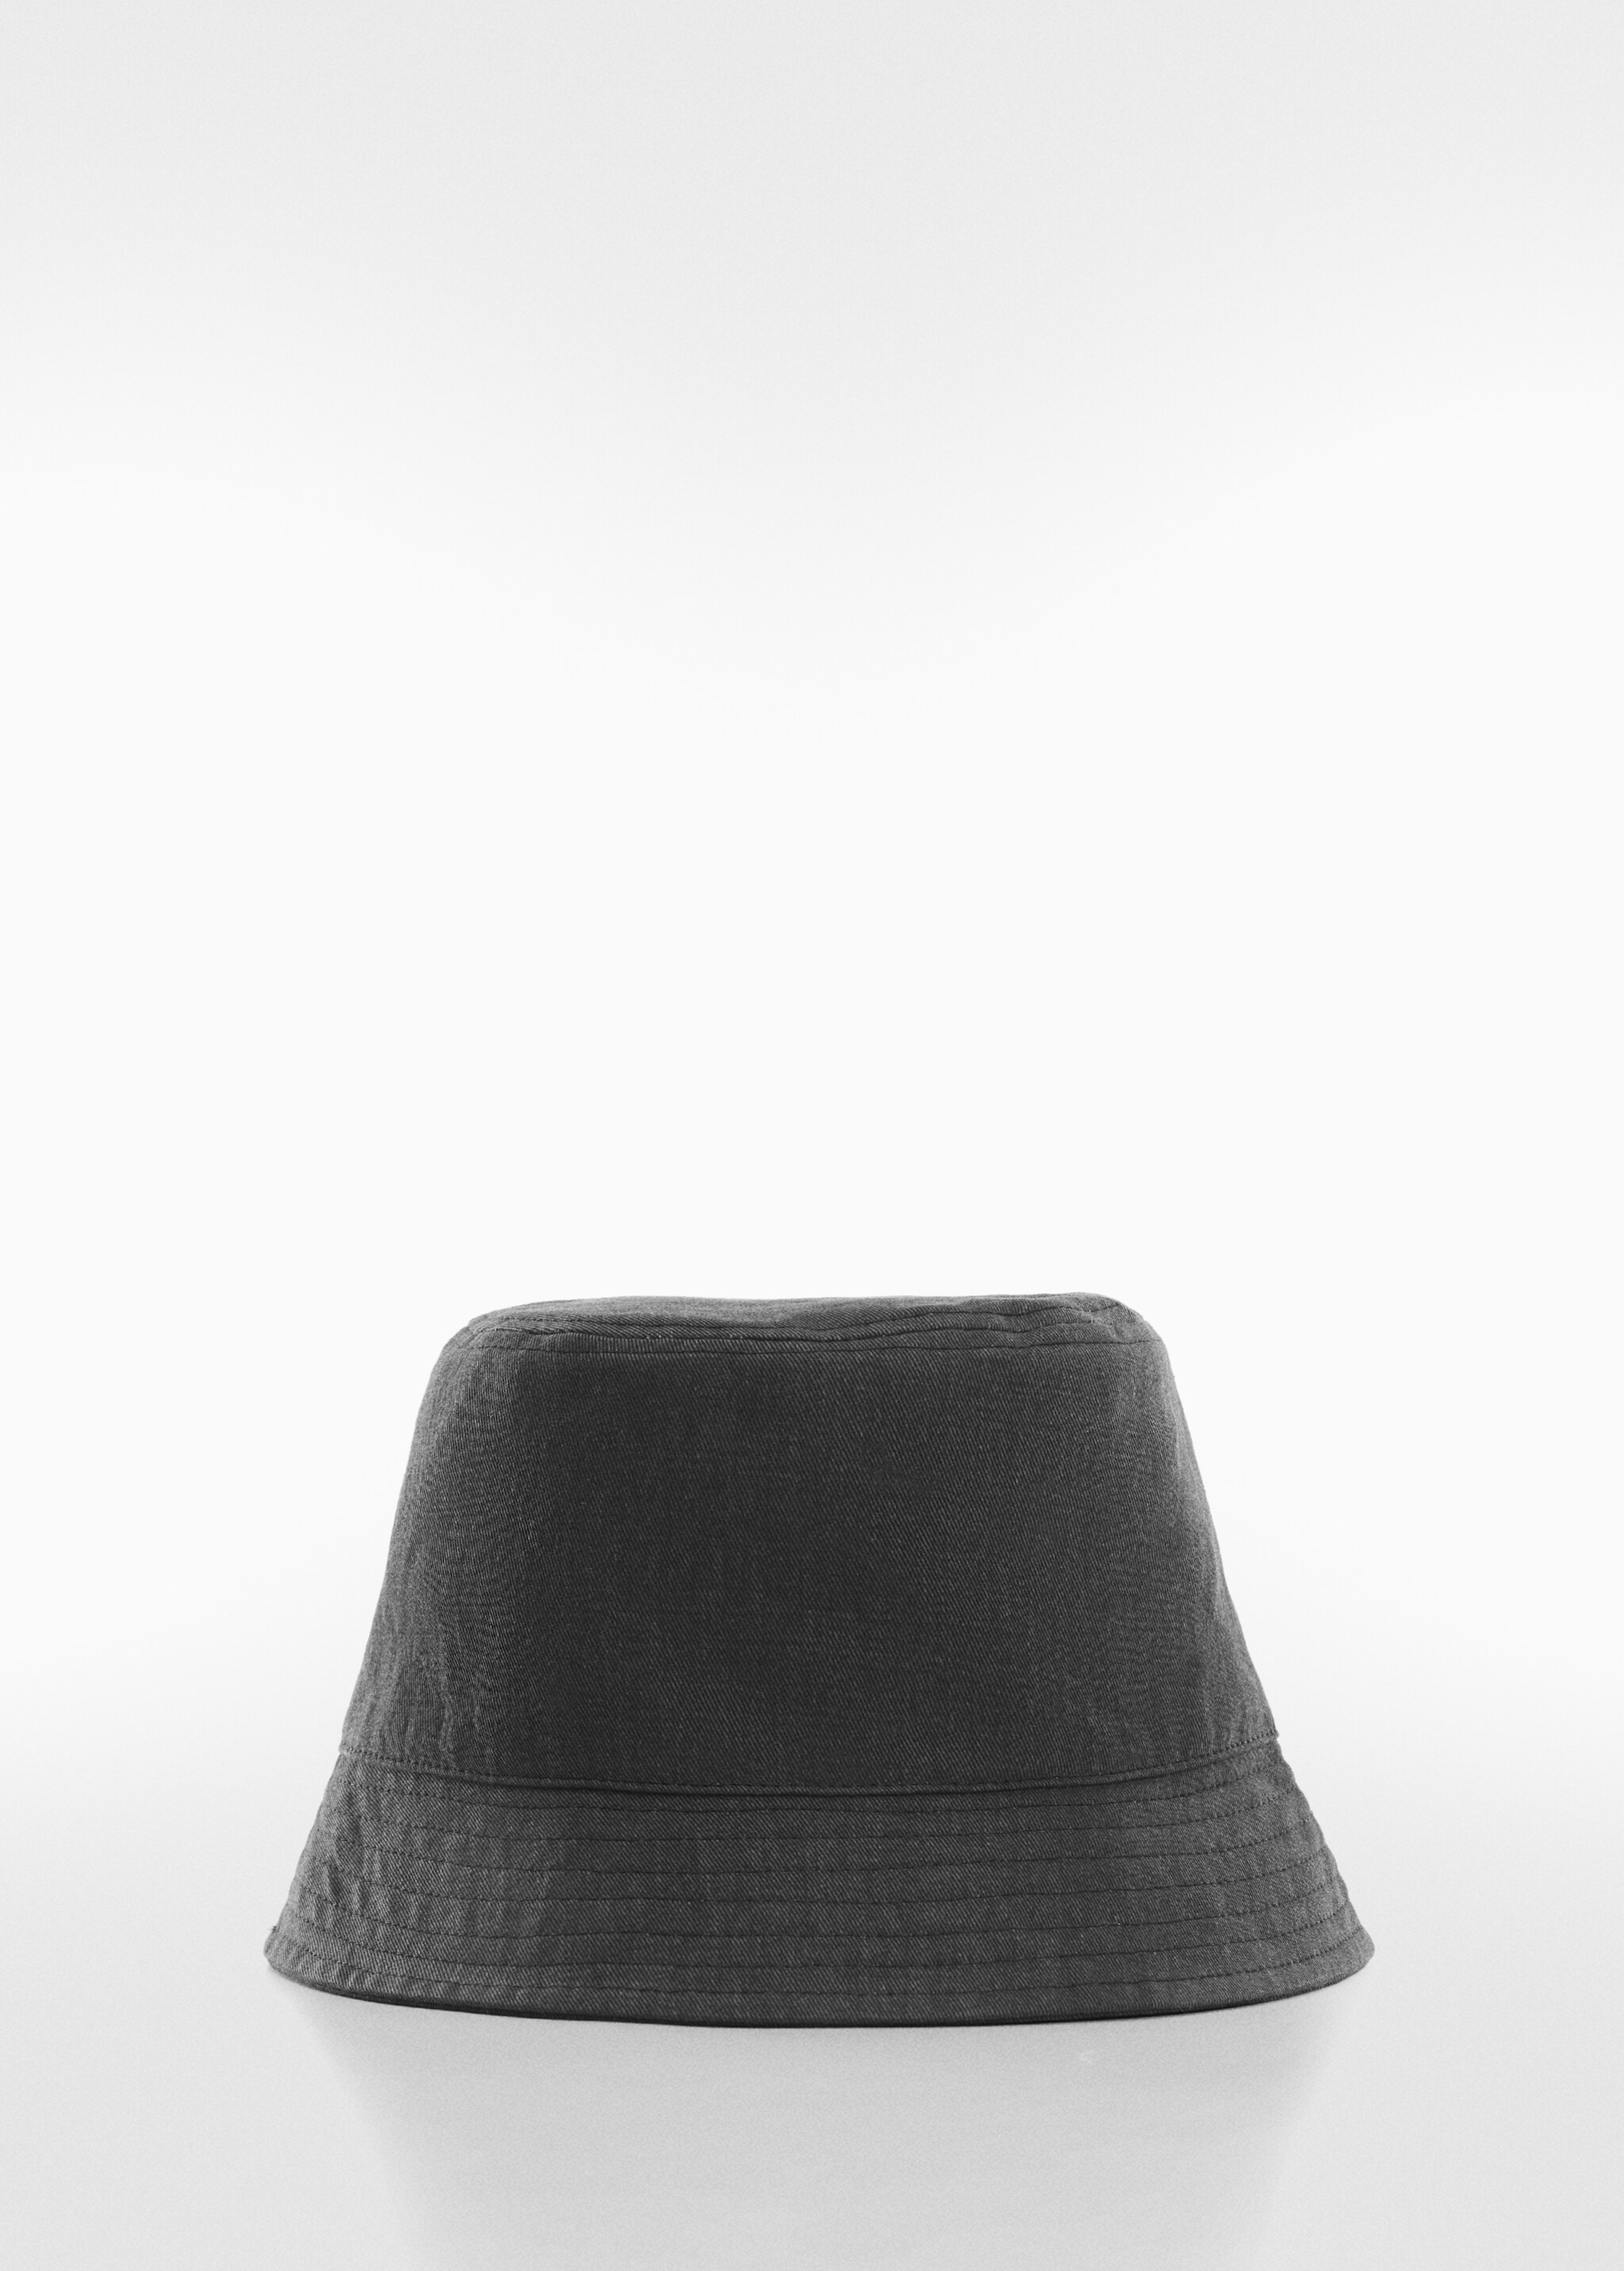 Kot bucket şapka - Modelsiz ürün